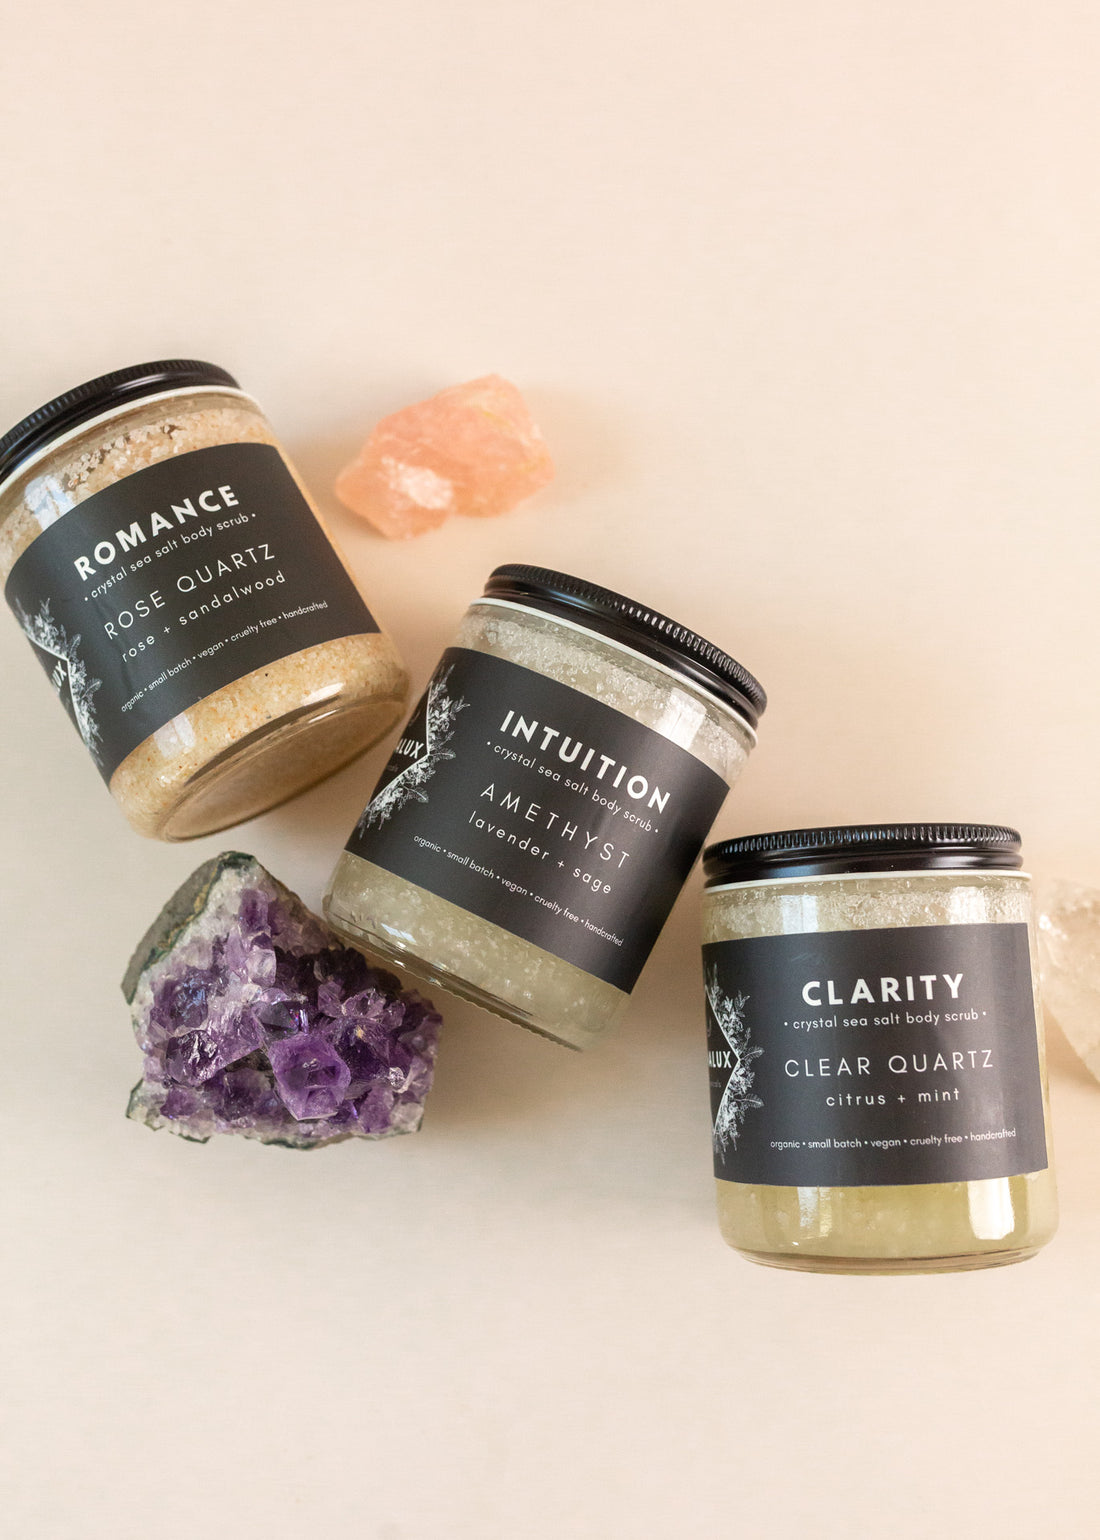 Three sea salt body scrub jars on a flatlay with crystals lying around them